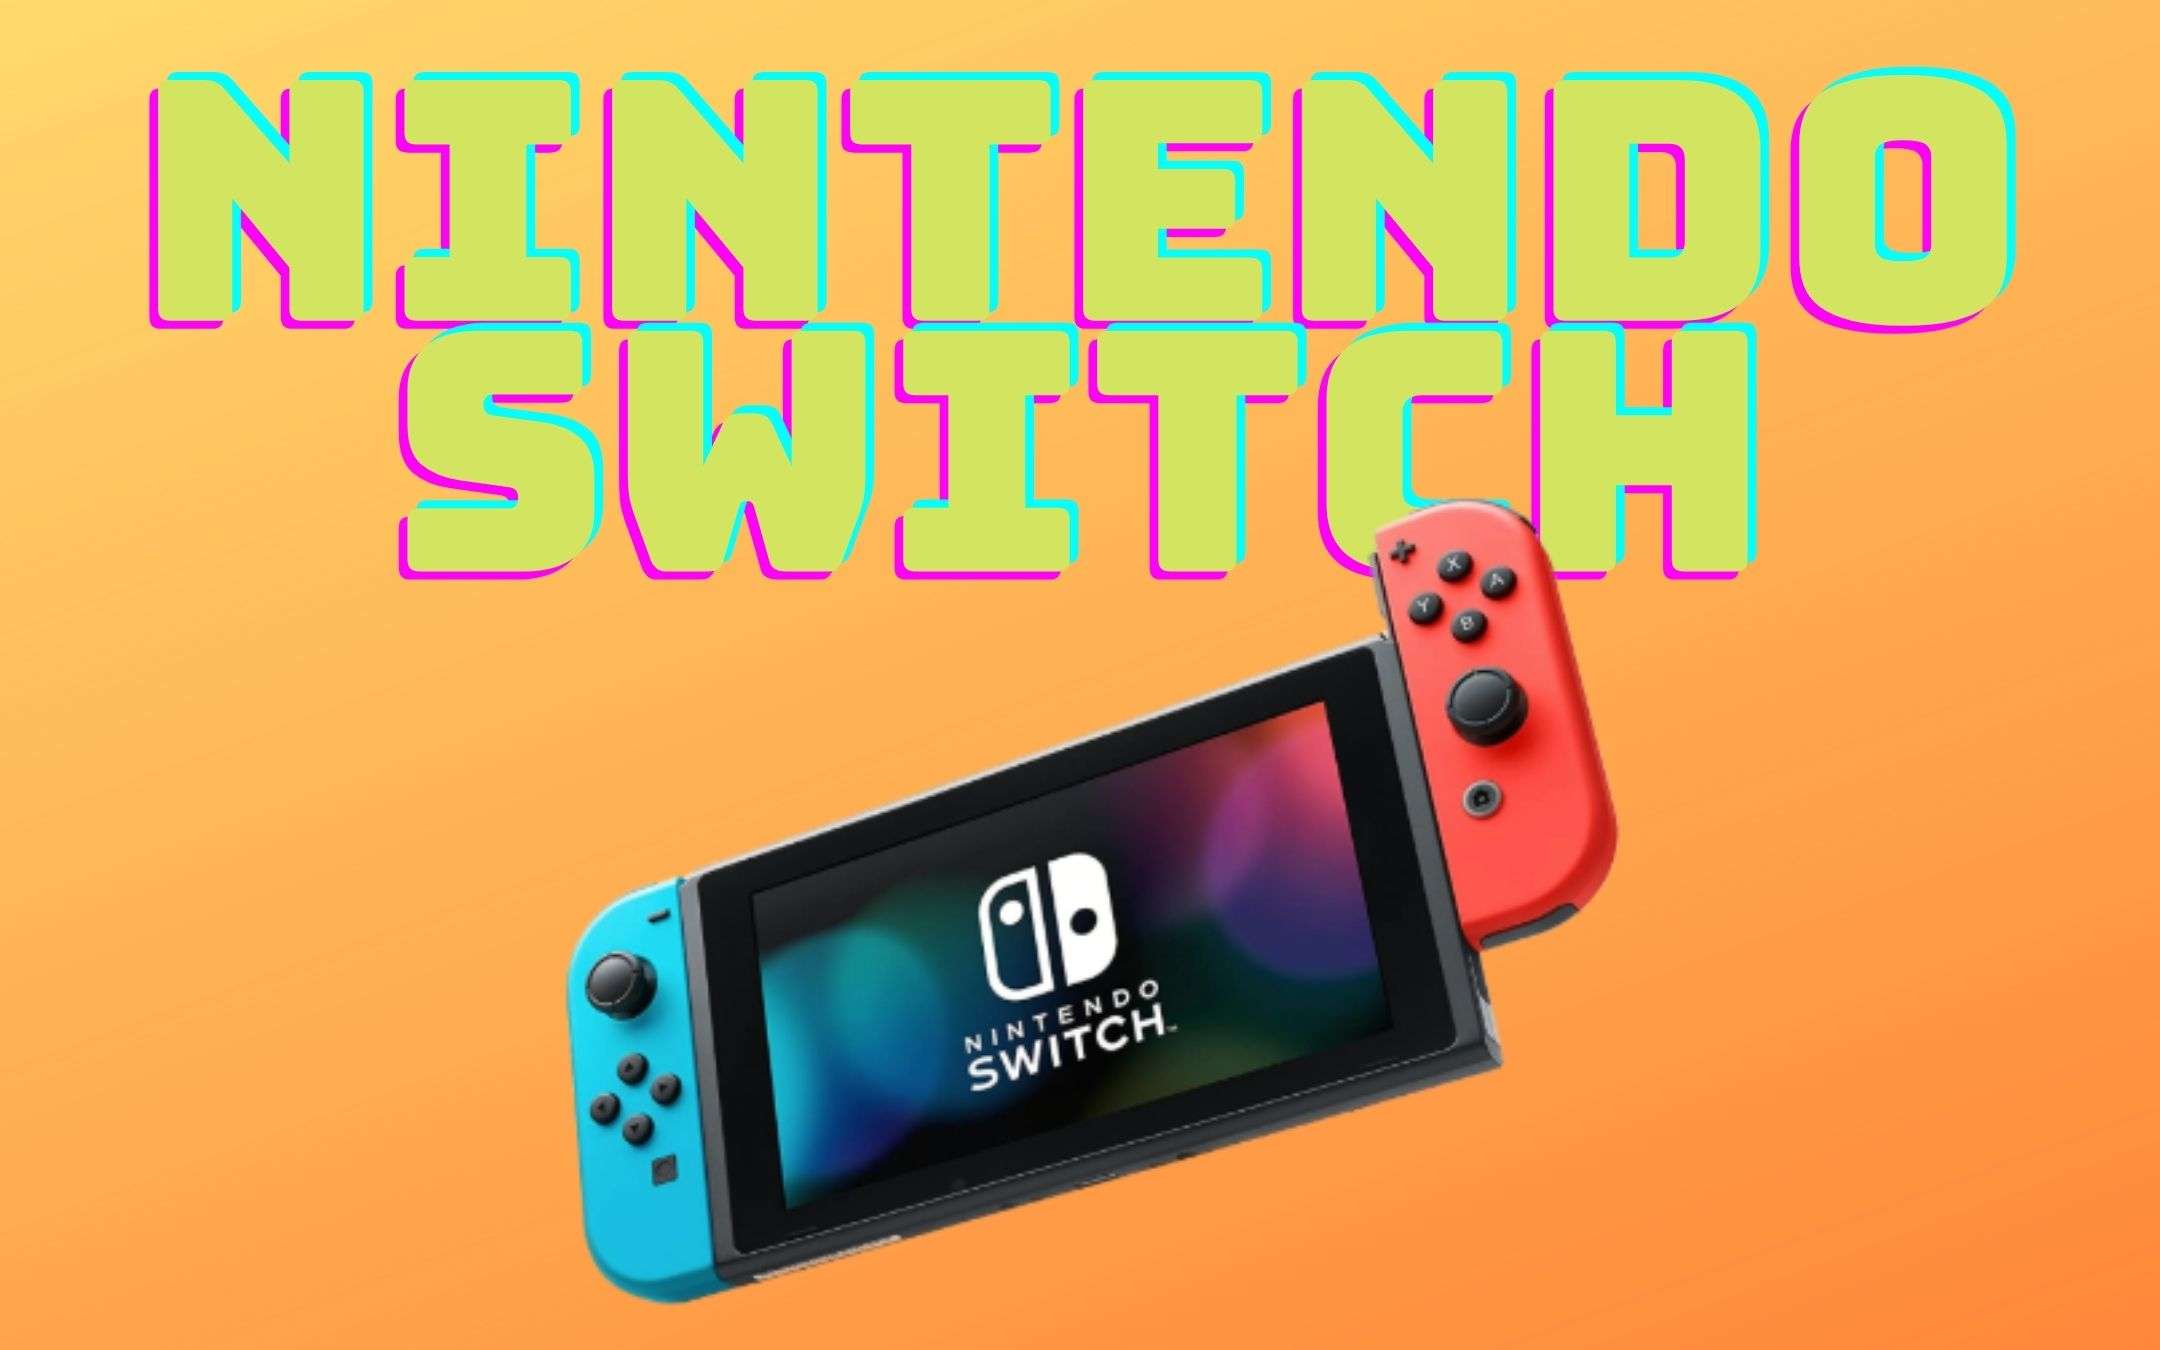 Nintendo Switch traina il settore dei videogiochi